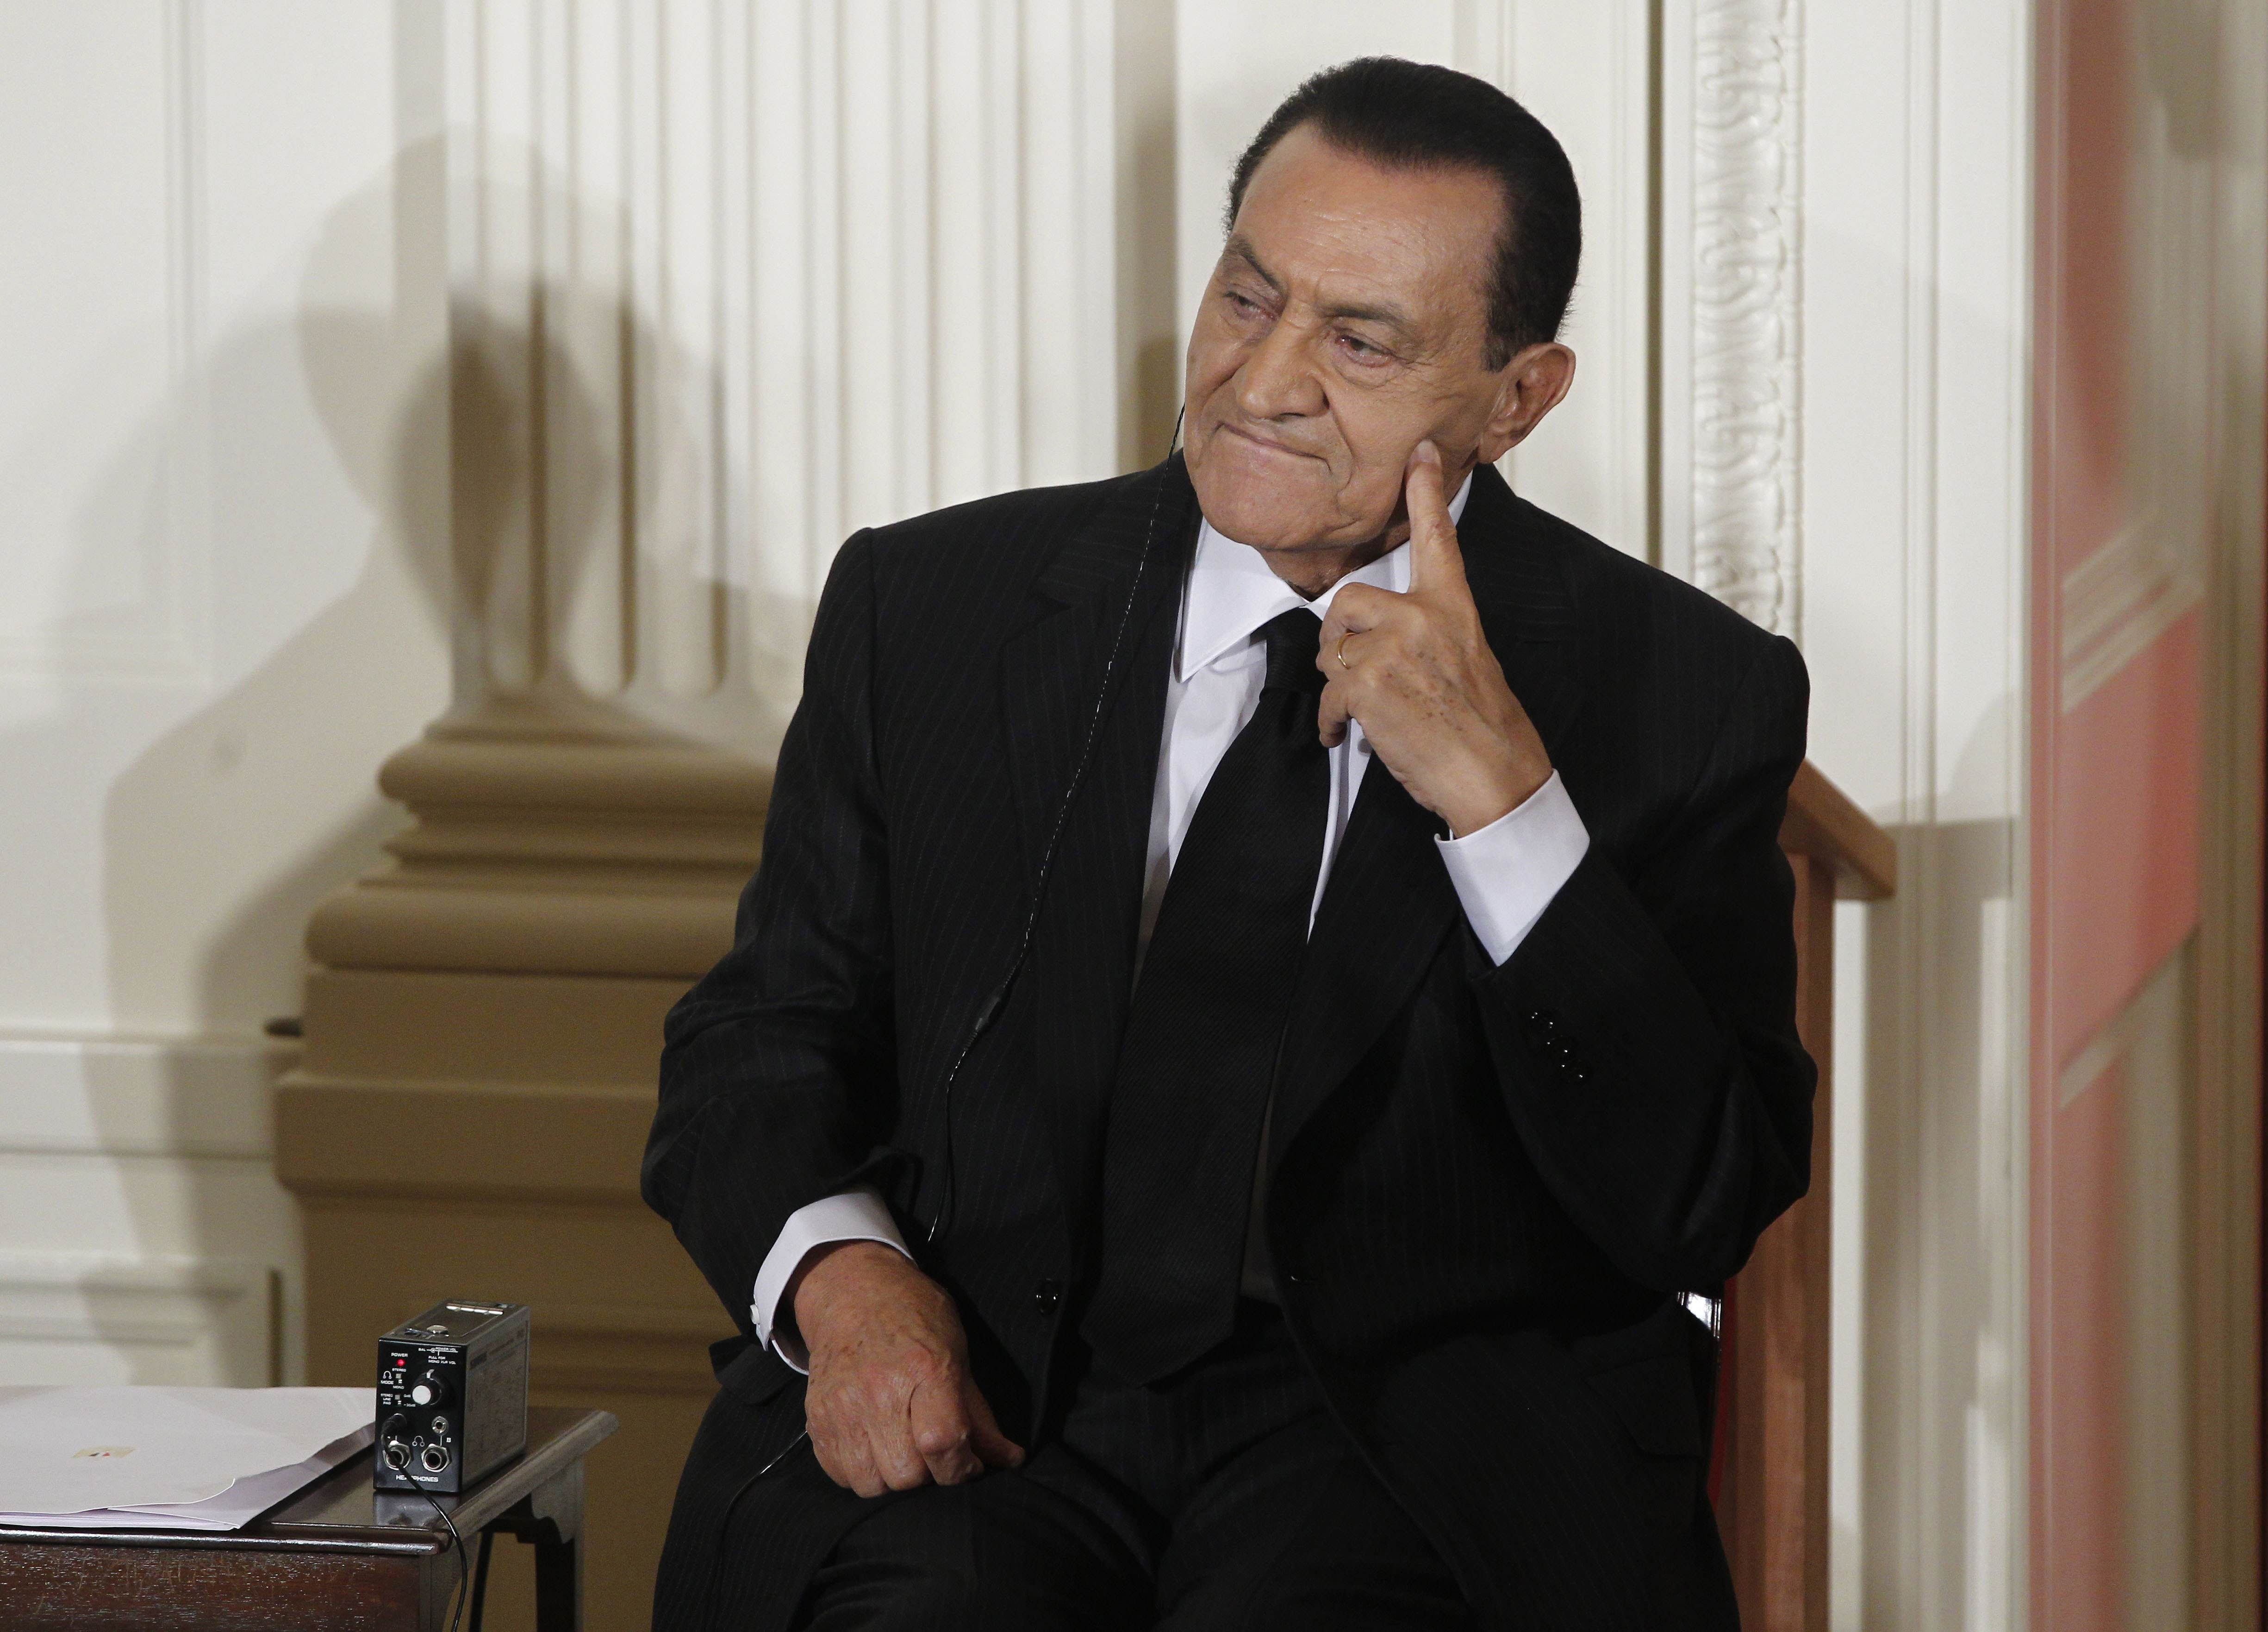 Den Arabiska våren spred sig vidare. Efter massiva protester och demonstrationer avgick Egyptens president Hosni Mubarak 11 februari 2011 efter 30 vid makten. 